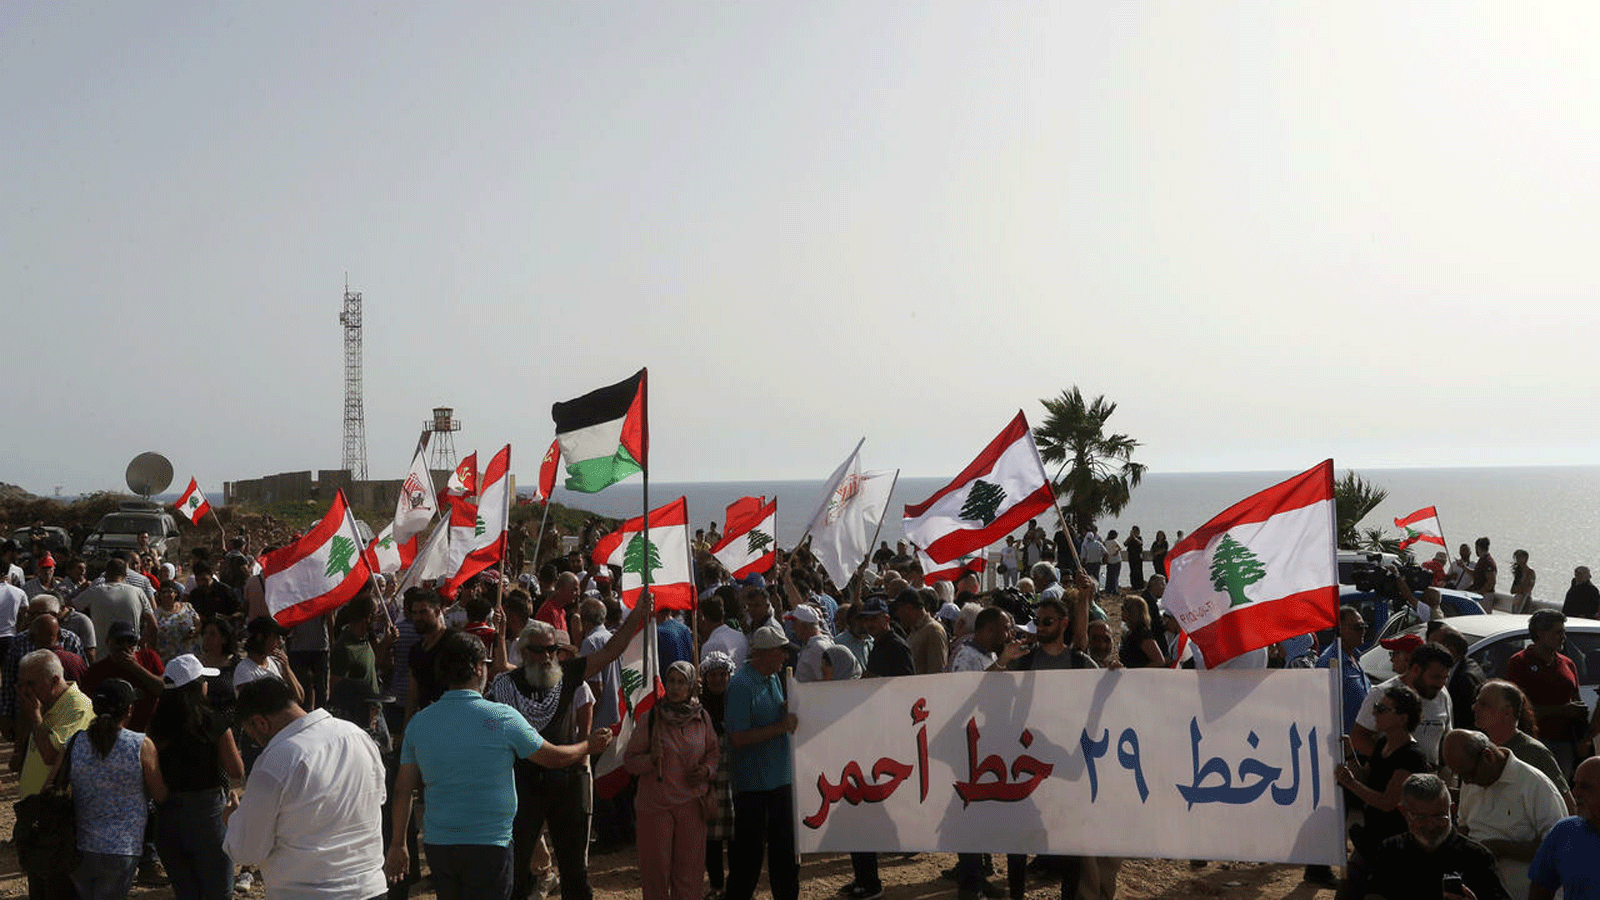 لبنانيون يحتجون على استقدام إسرائيل سفينة لاستخراج الغاز من حقل كاريش